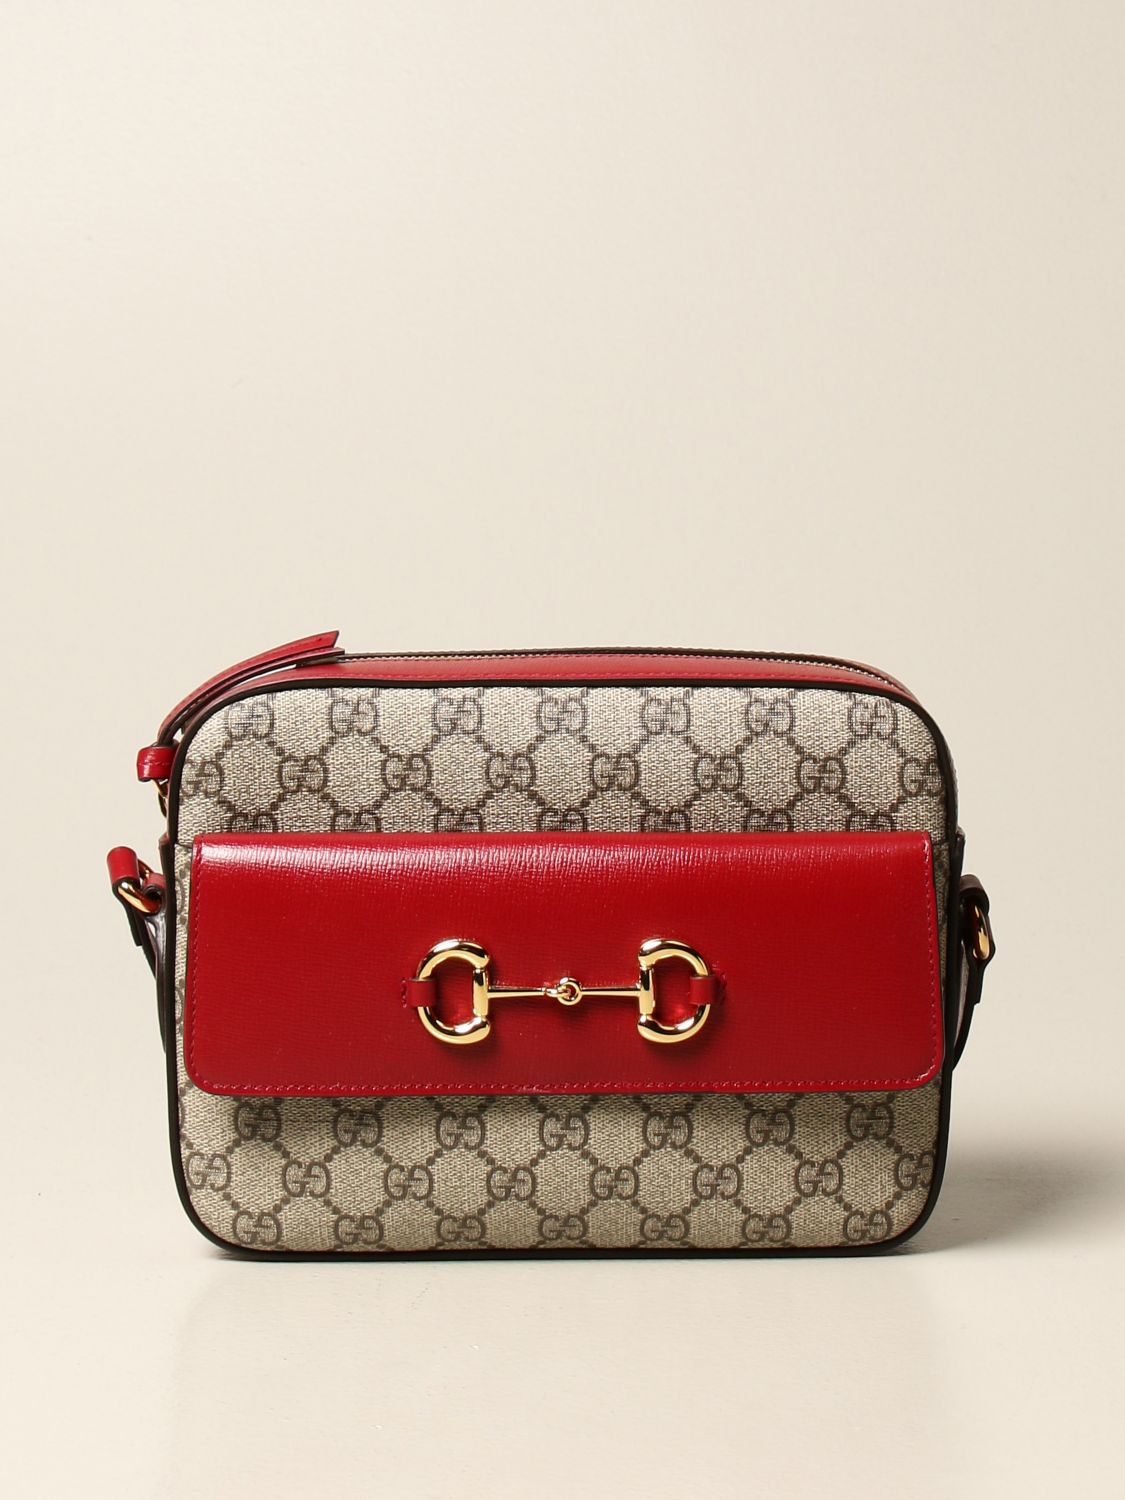 GUCCI: Horsebit 1955 bag in GG Supreme fabric - Cherry | Gucci ...